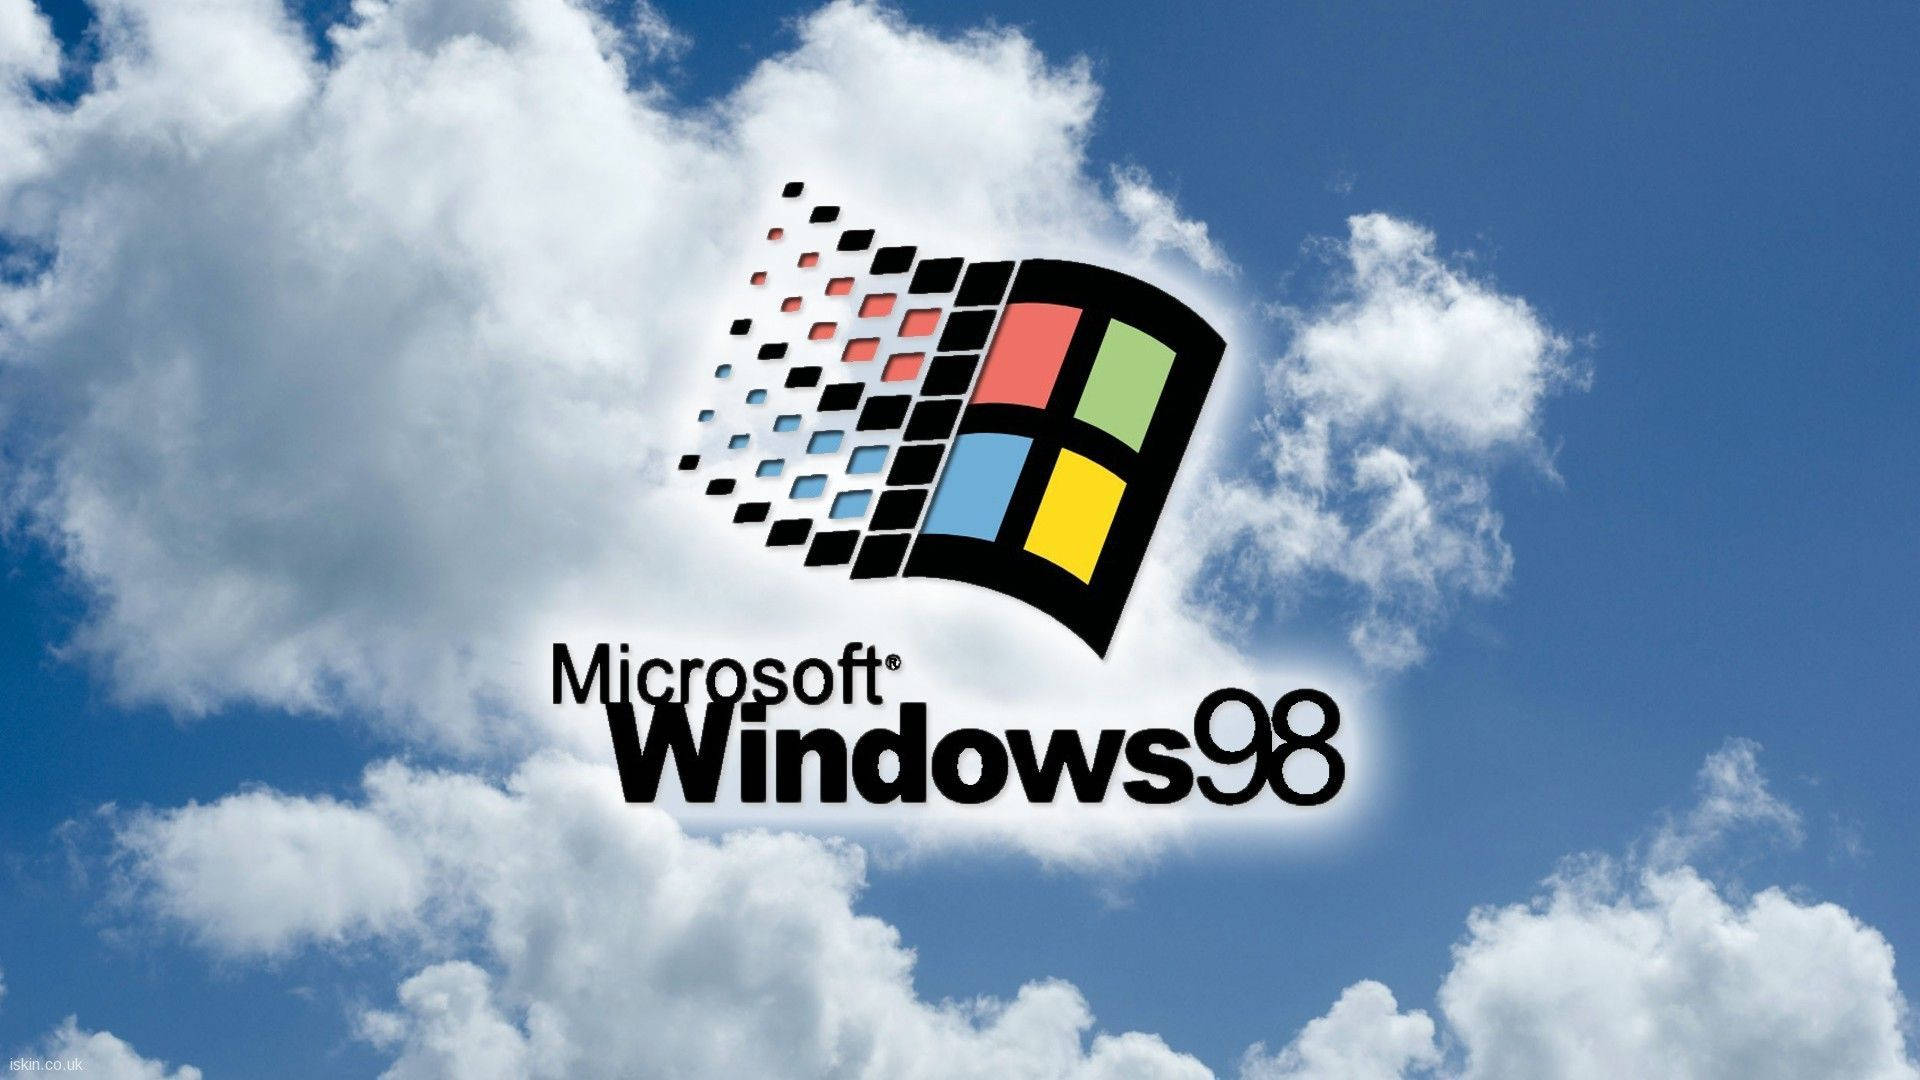 Plano De Fundo Do Windows 98